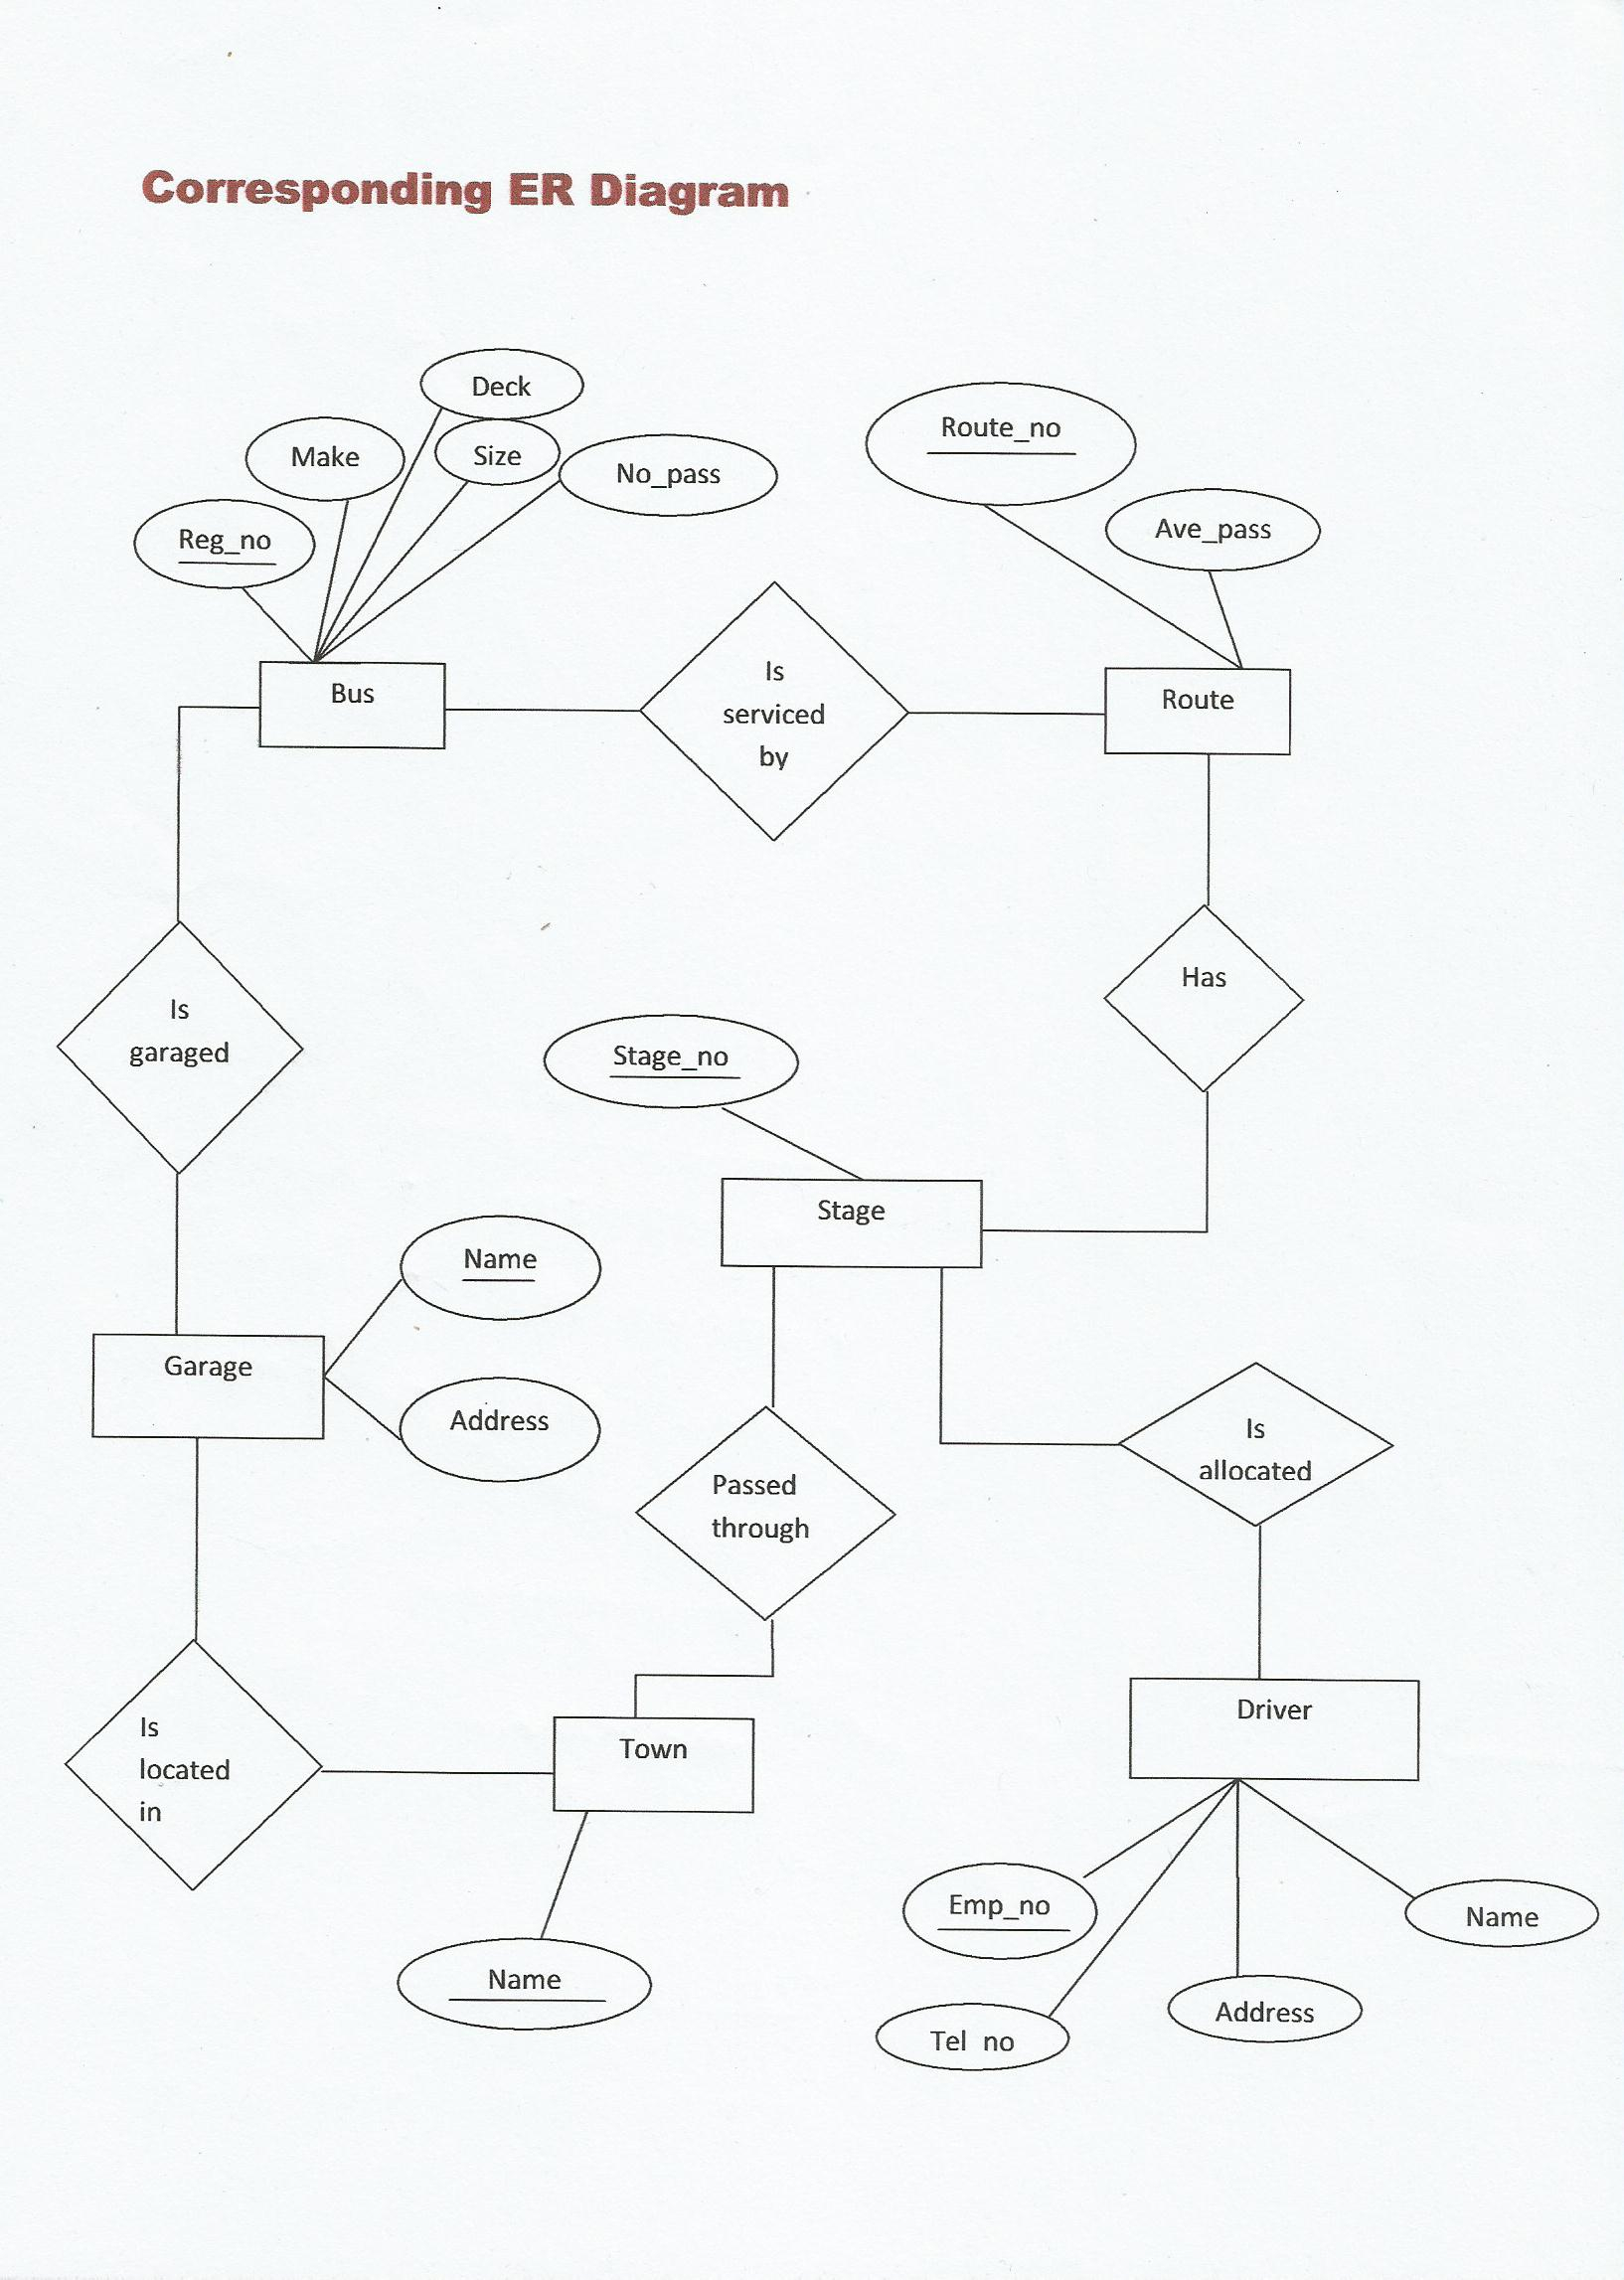 Er Diagram For Courier Management System | ERModelExample.com